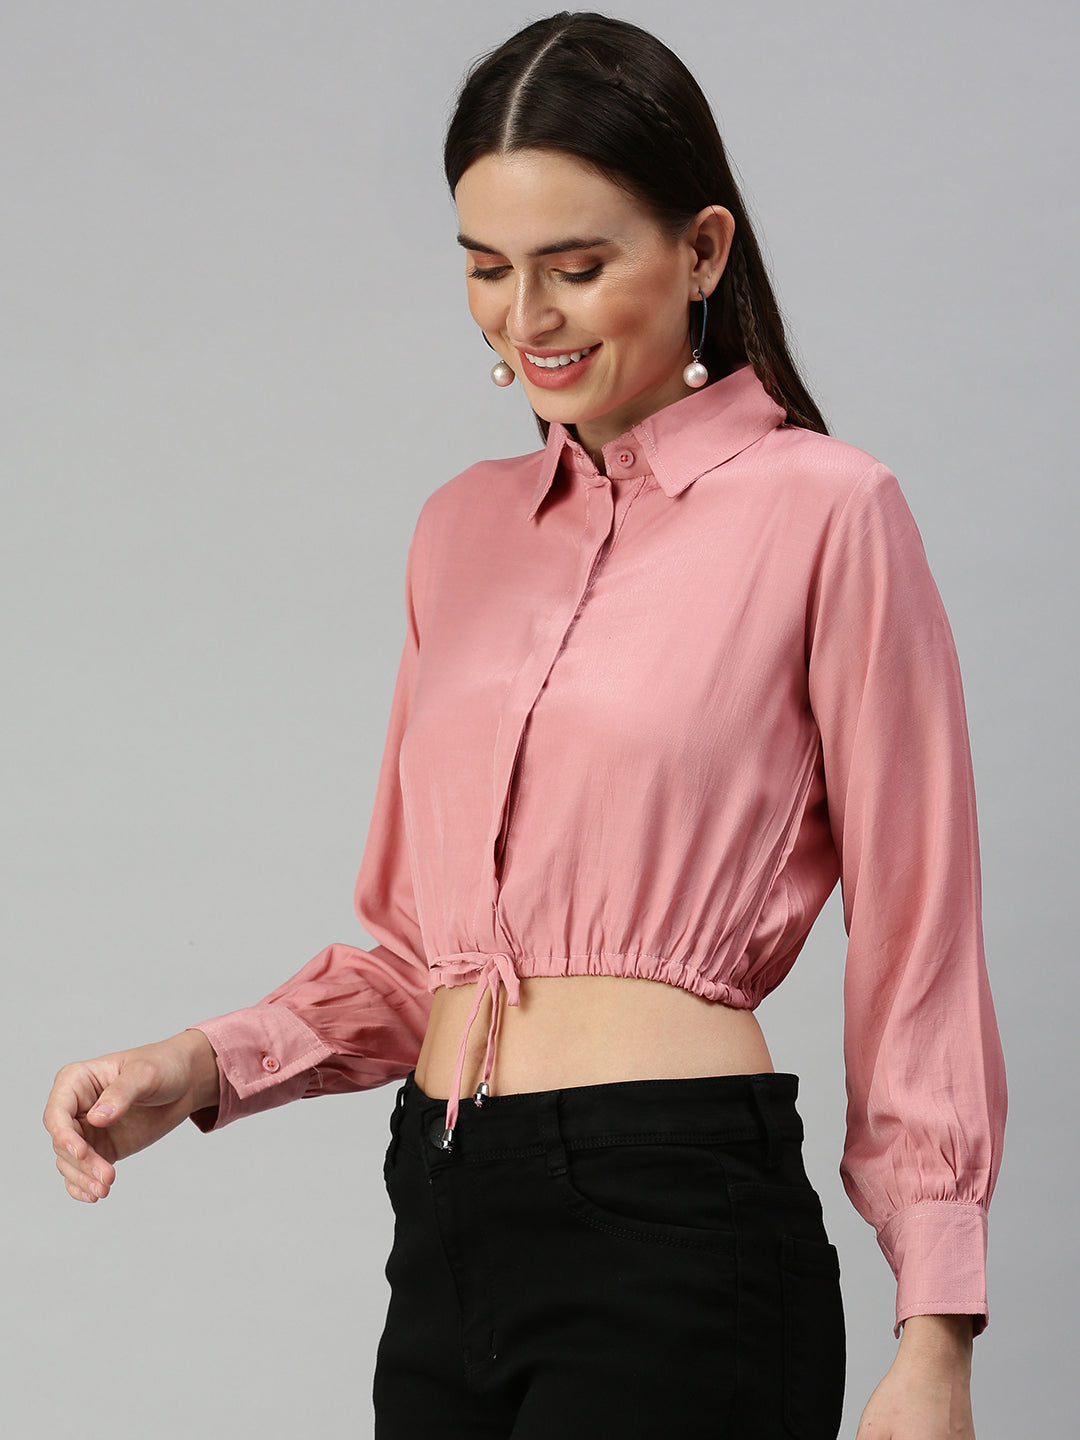 Women's Pink Solid Crop Tops